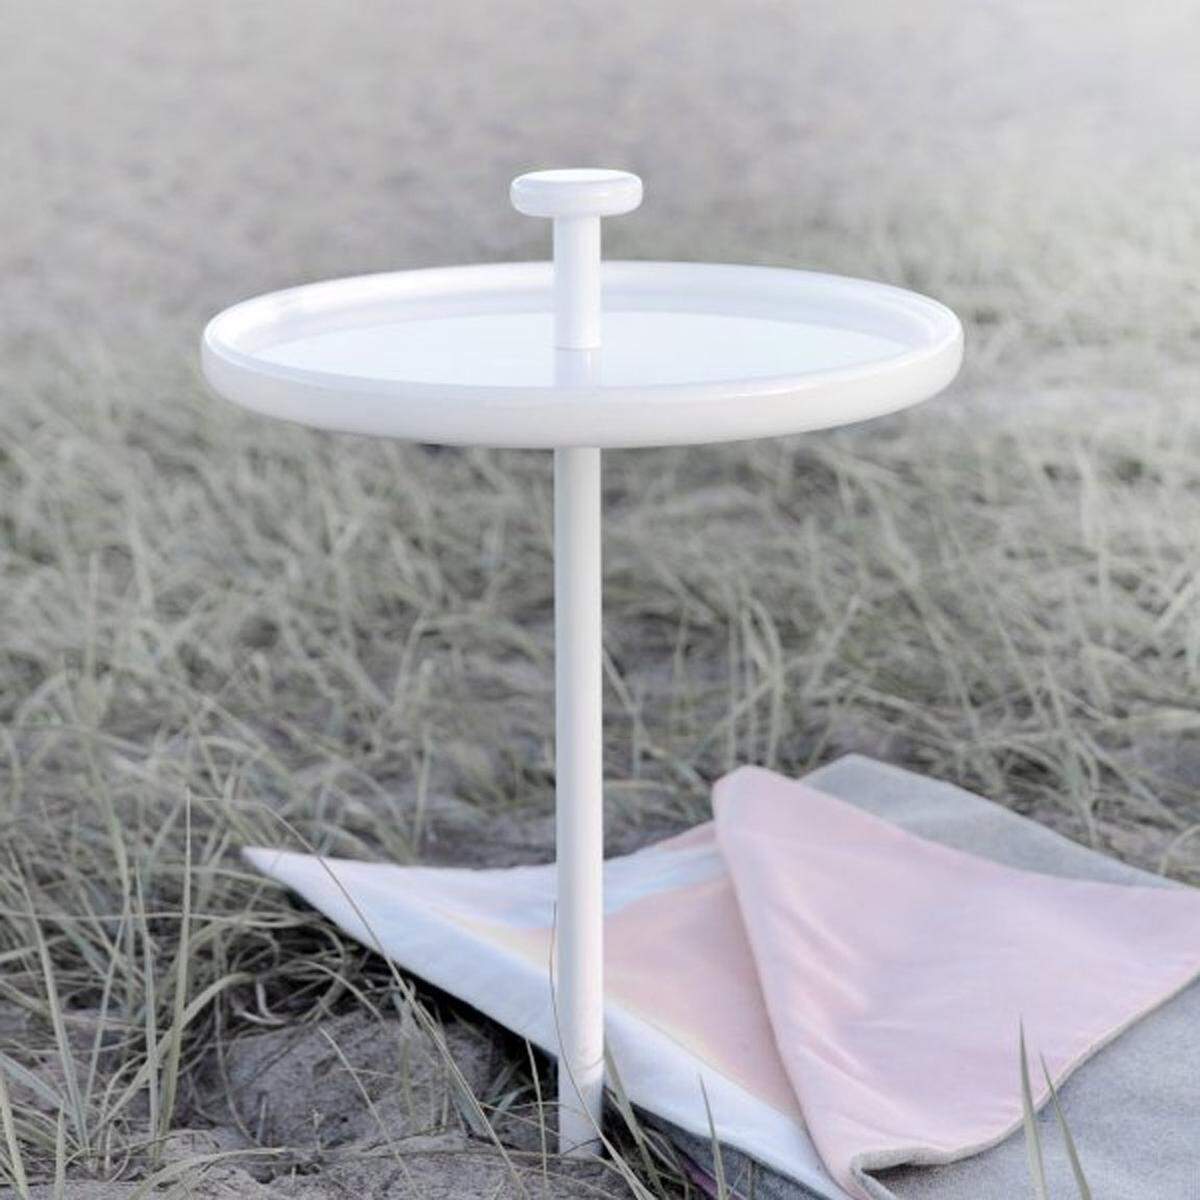 Der kleine Tisch sieht wie eine überdimensionale Pin-Nadel aus. Und genau wie eine Pin-Nadel wird er auch in die Erde.via Design 3000